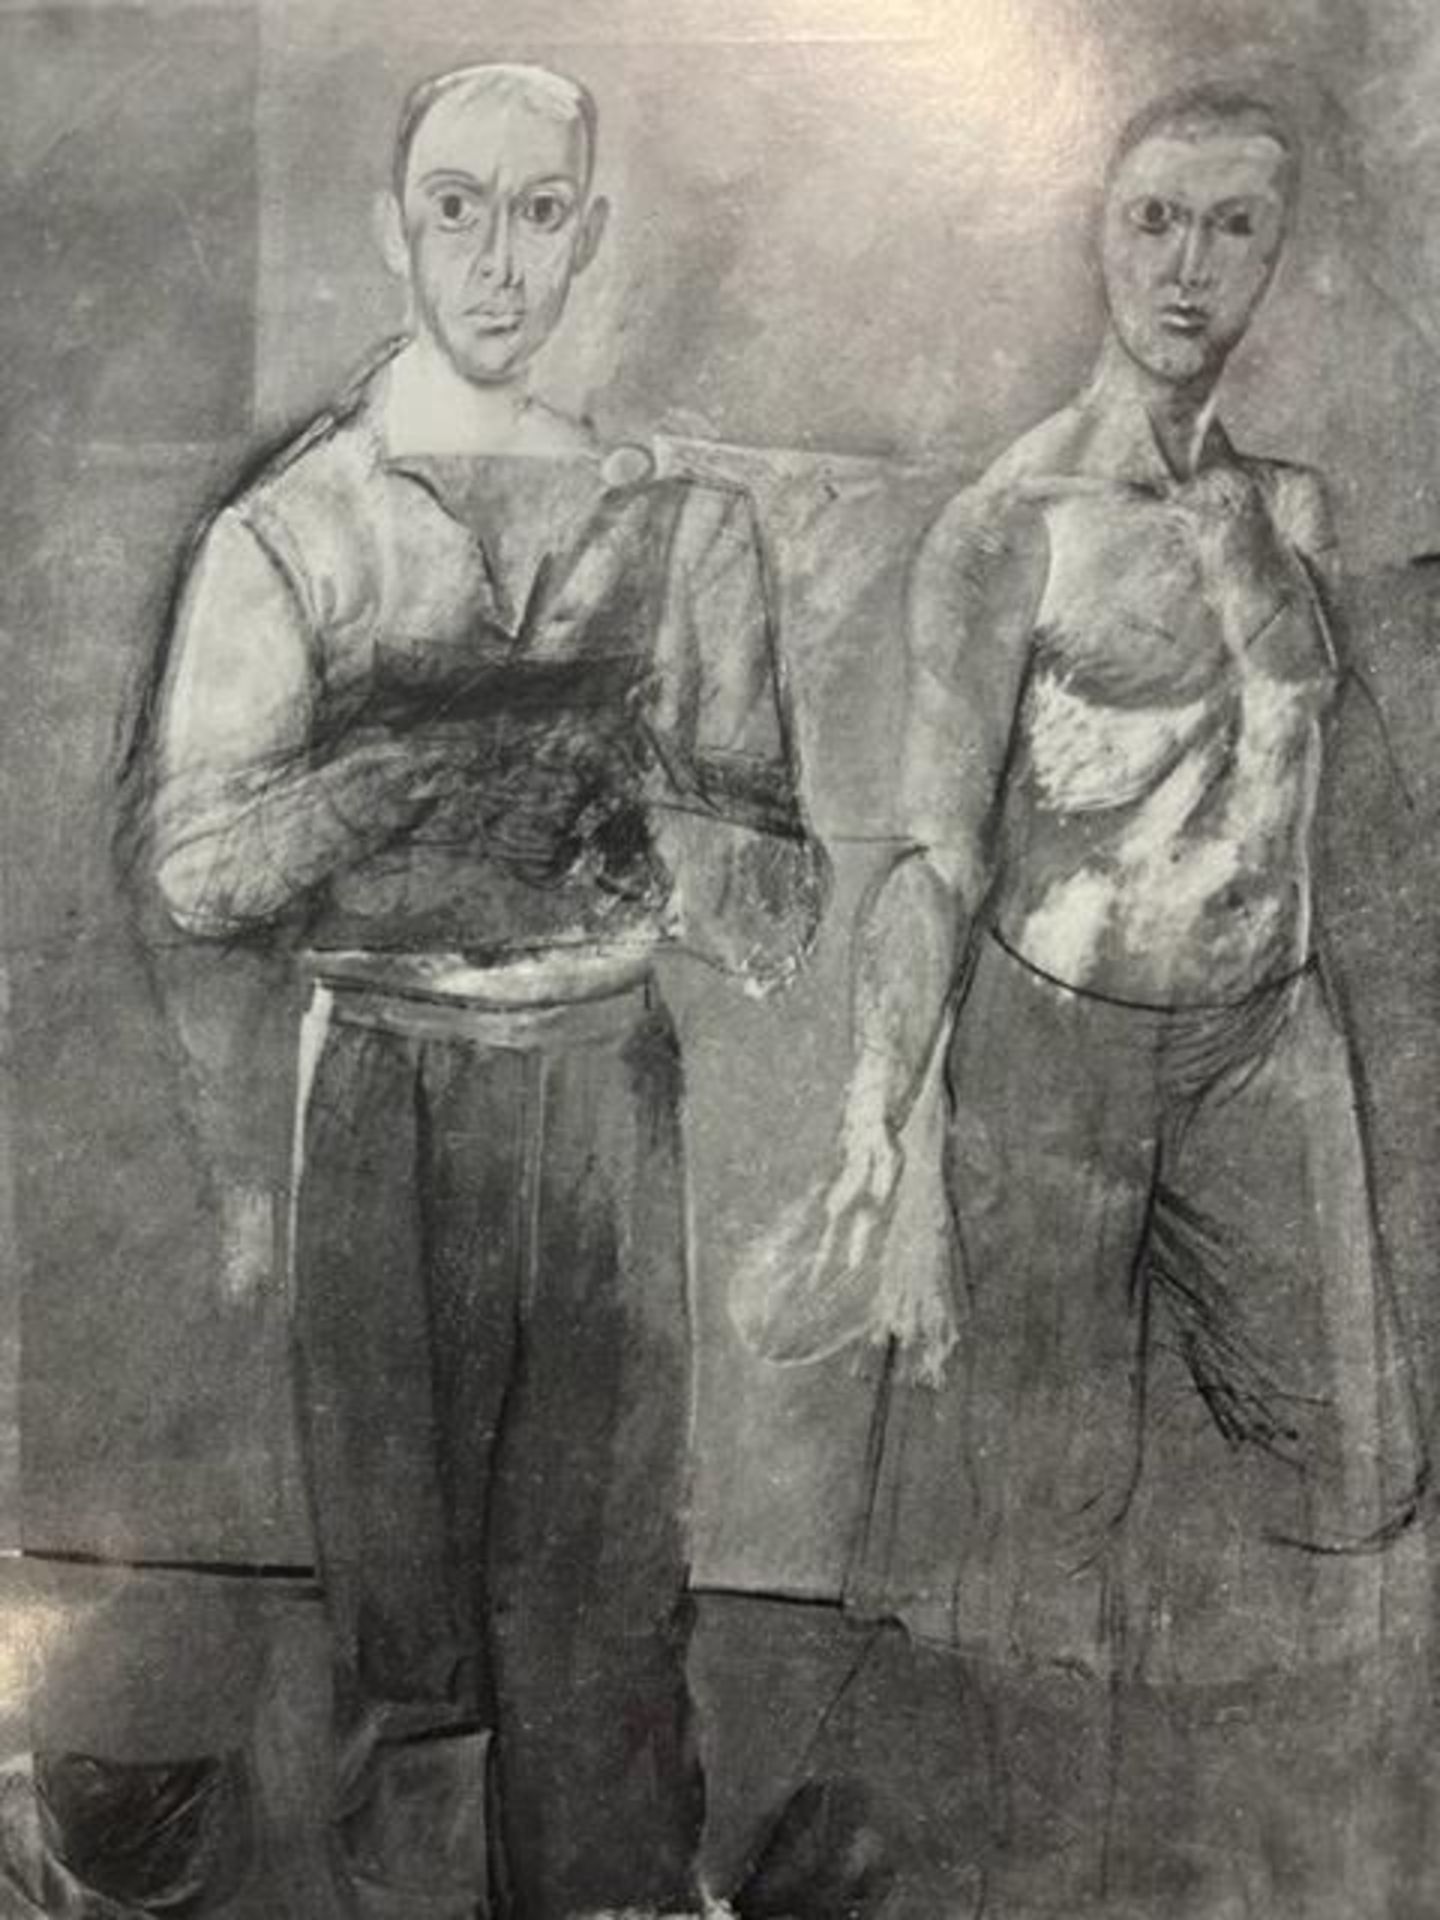 Willem de Kooning "Two Men Standing" Print. - Bild 2 aus 6